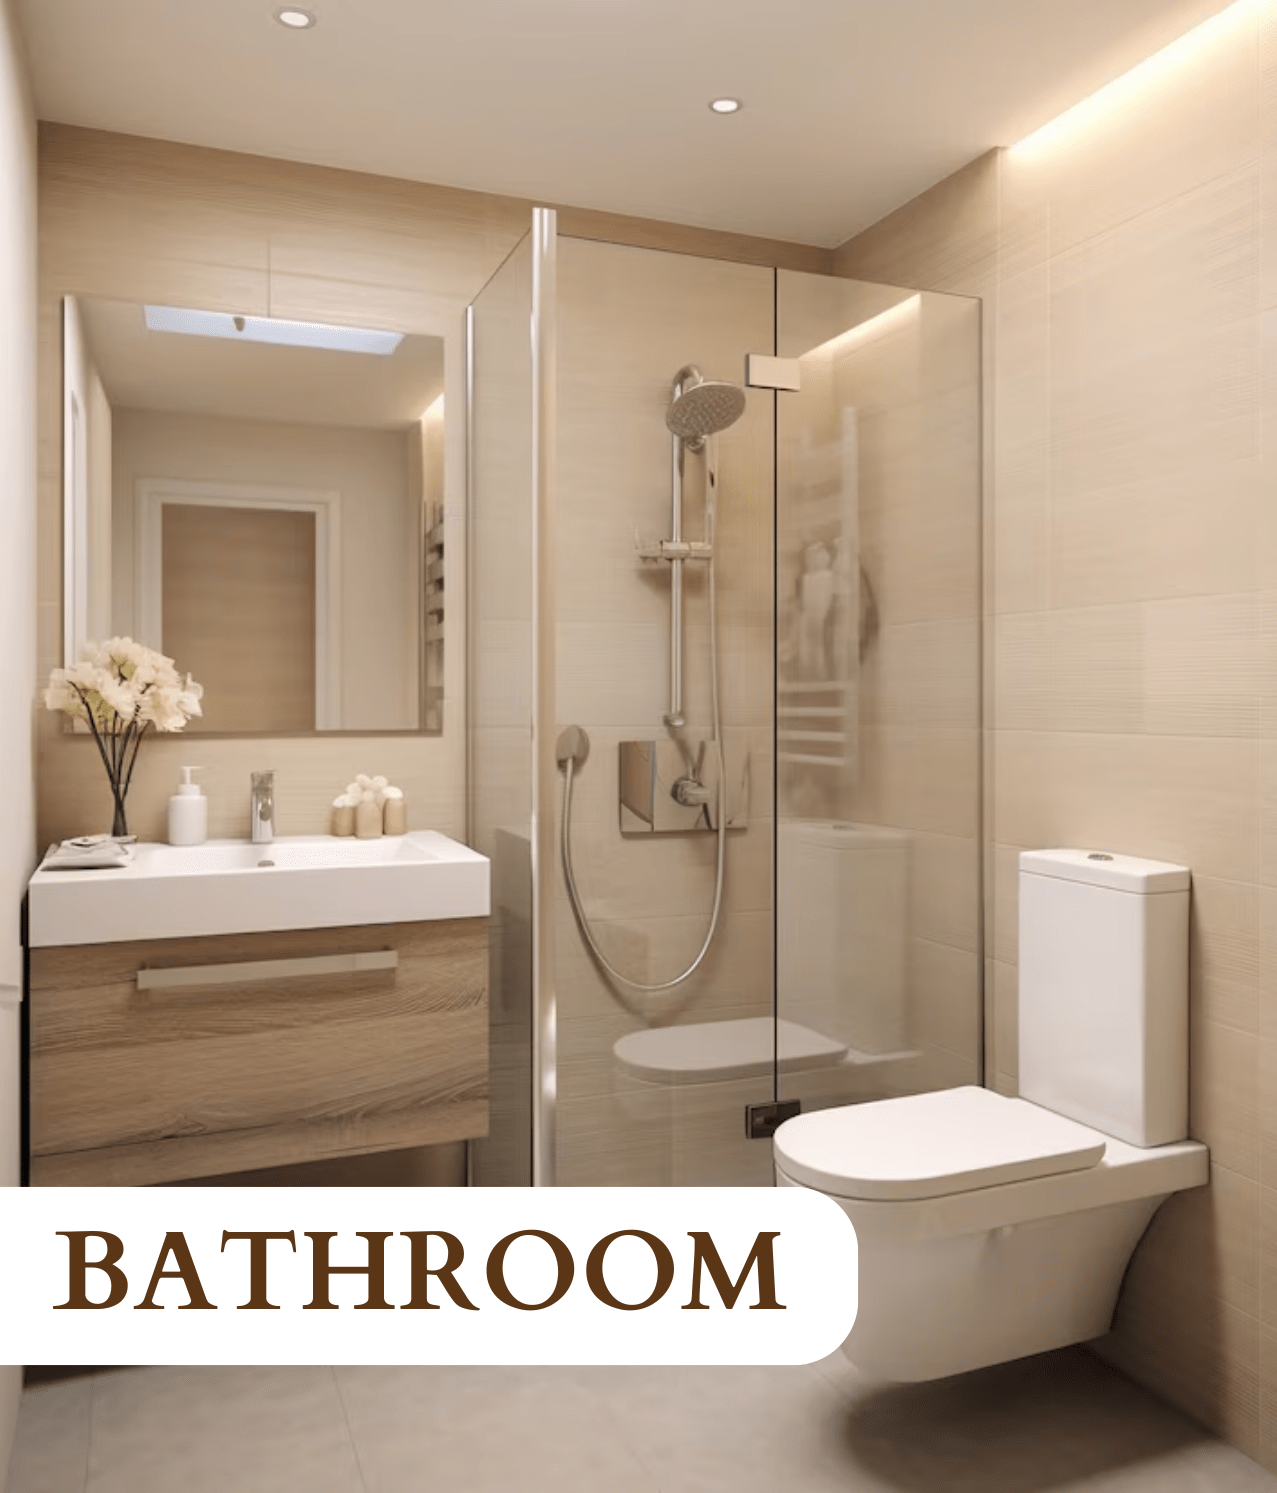 Urbanteakfunandinterior - Home Page - Bathroom